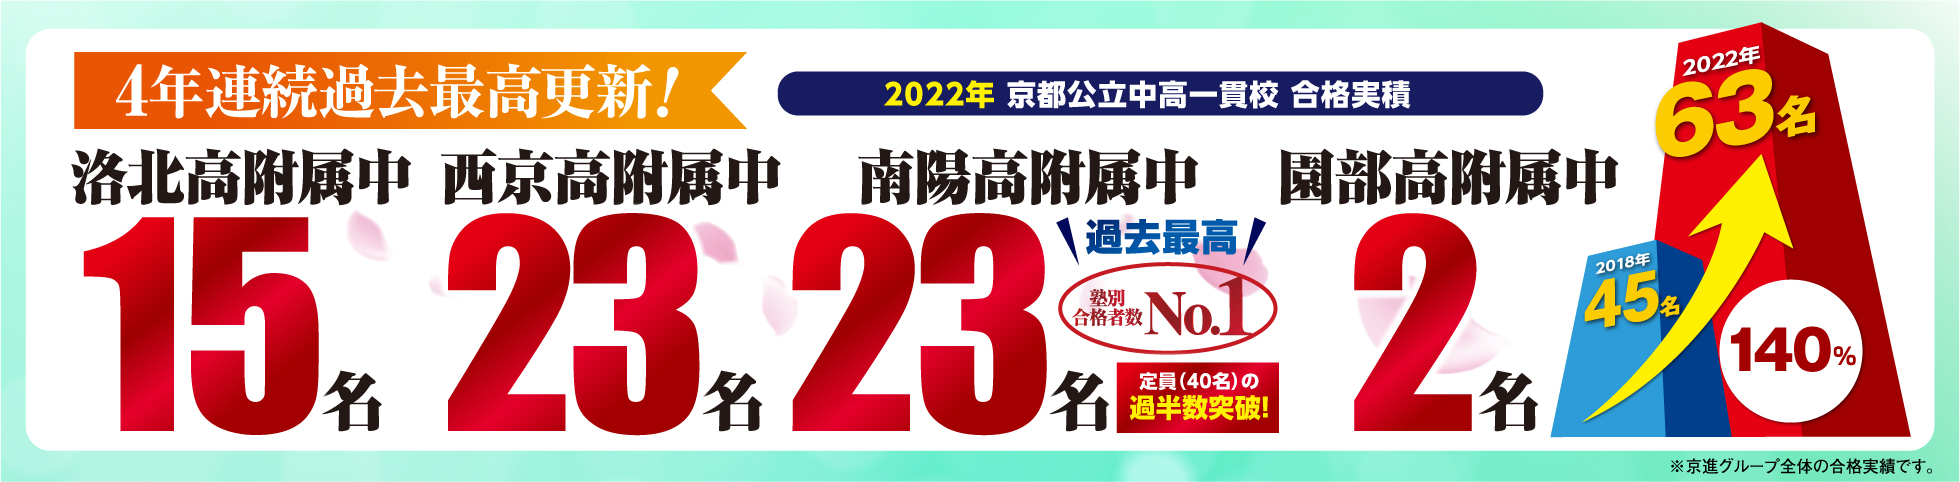 2022年度京都公立模試中高一貫校合格実績